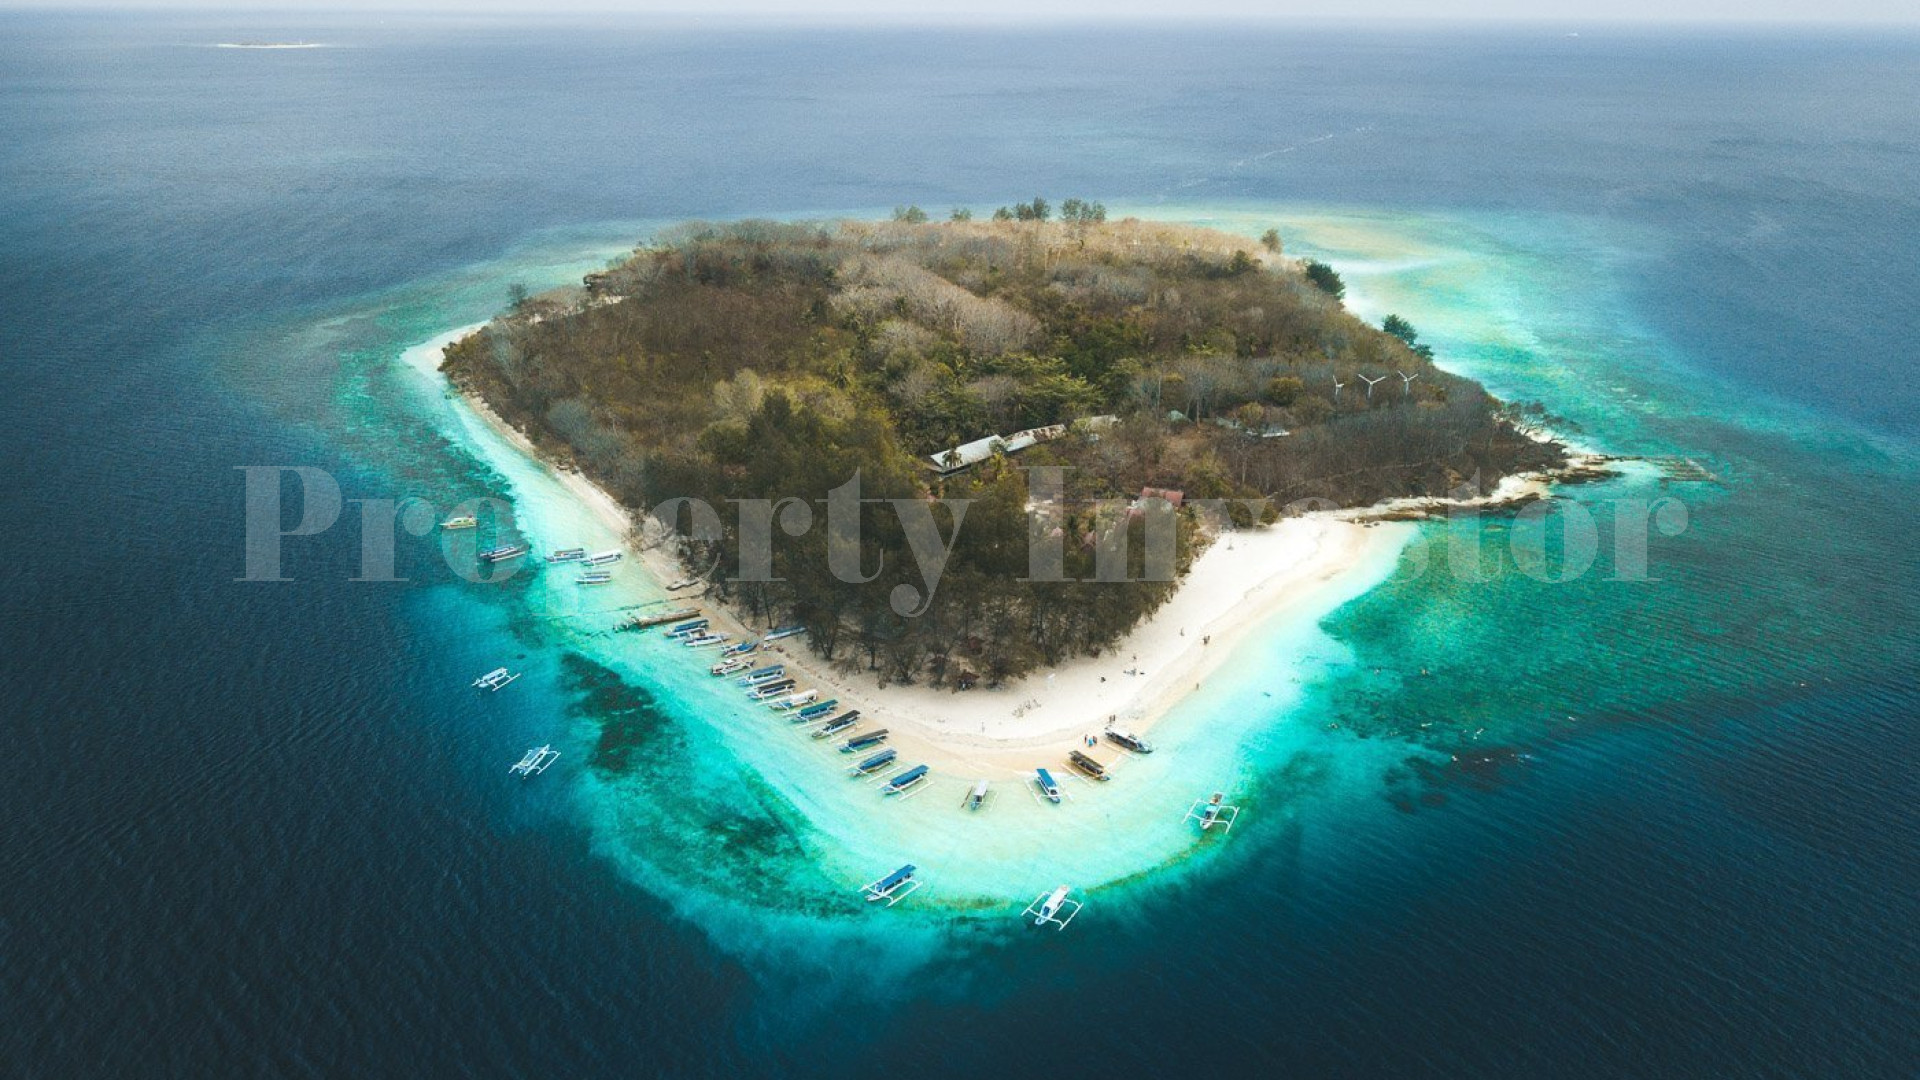 Продаётся частный остров 12,5 га под коммерческое развитие в Индонезии